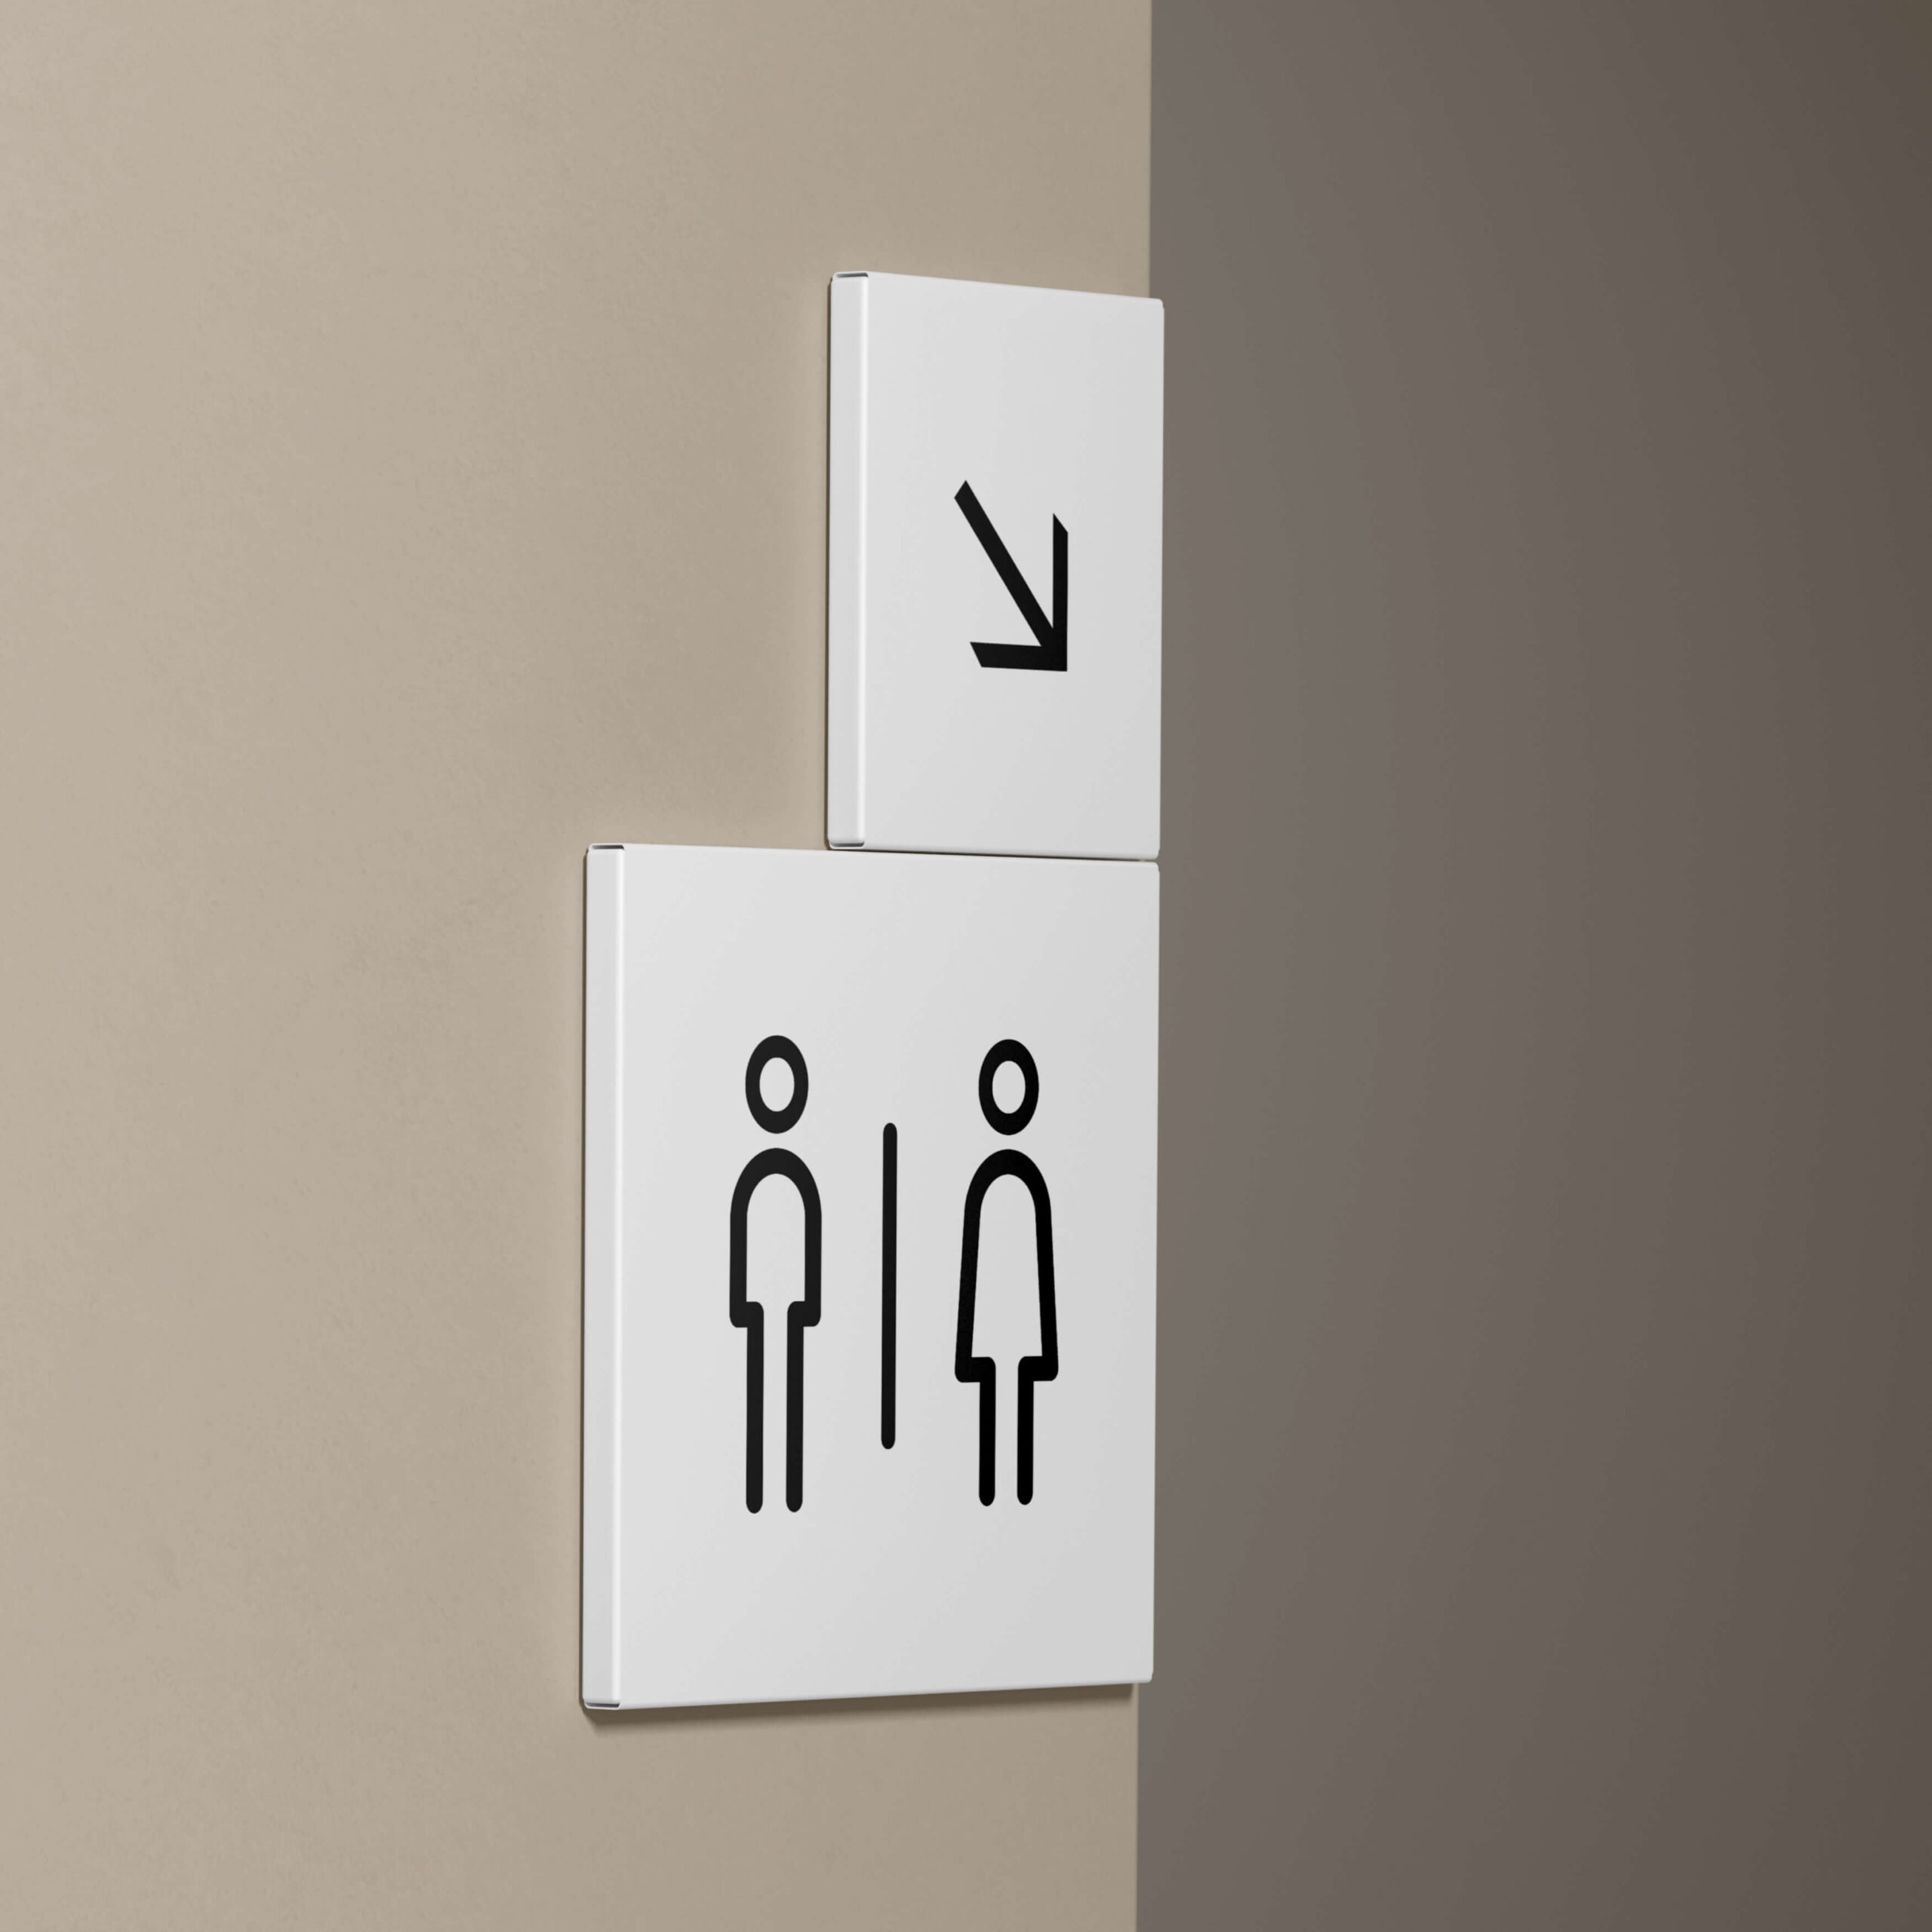 Imagen de dos pvc blancos cuadrados, colocados en una esquina de la pared, con el icono de una flecha y de los WC del edificio.